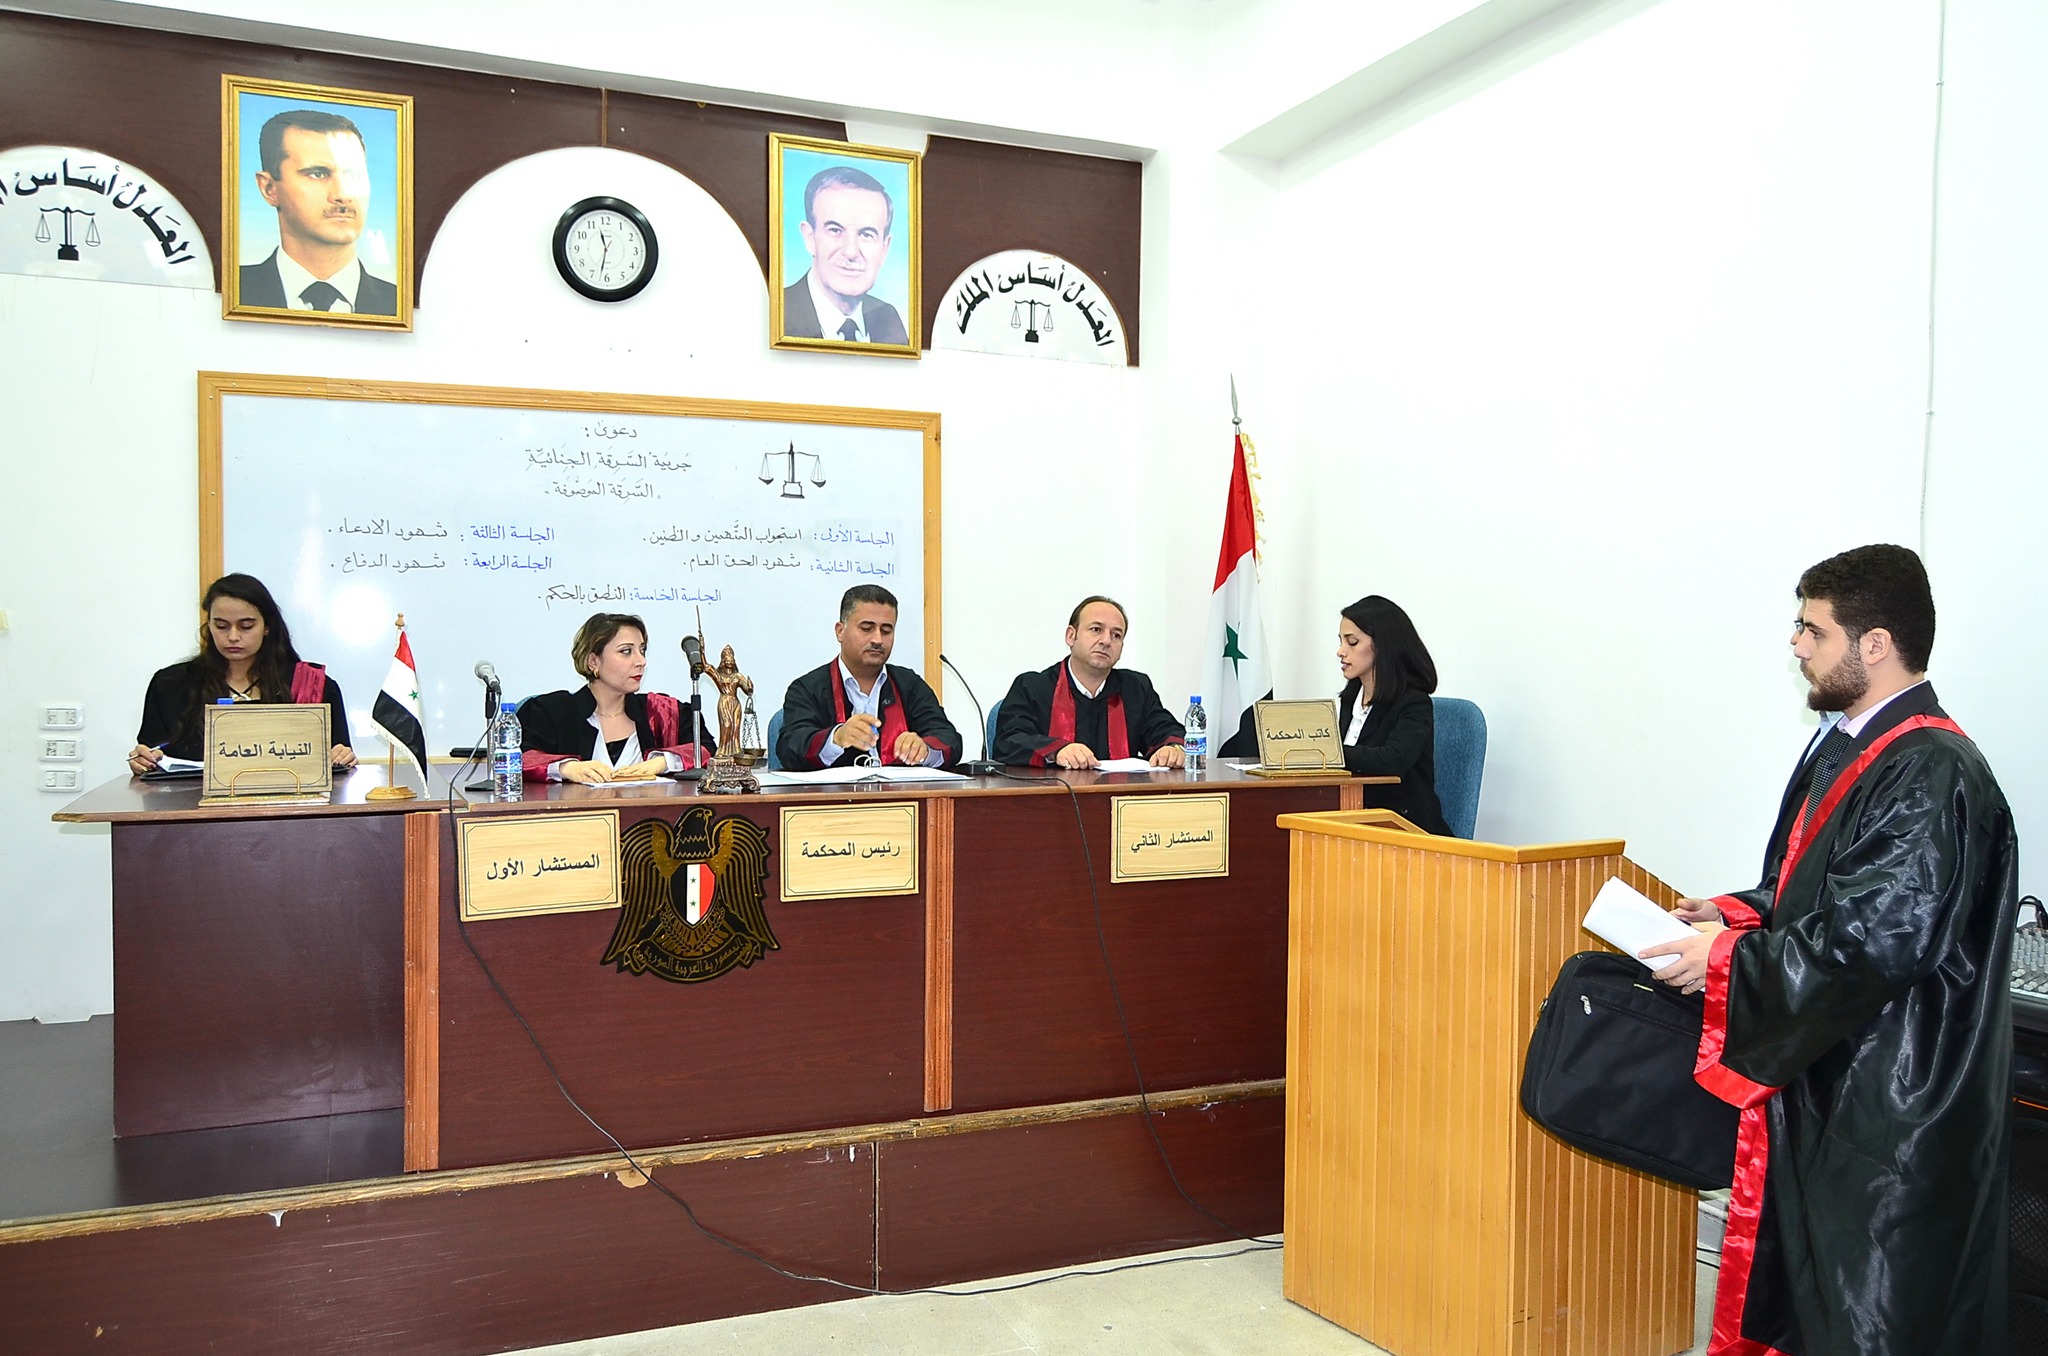 افتتاح المحكمة الإفتراضية في كلية الحقوق جامعة تشرين